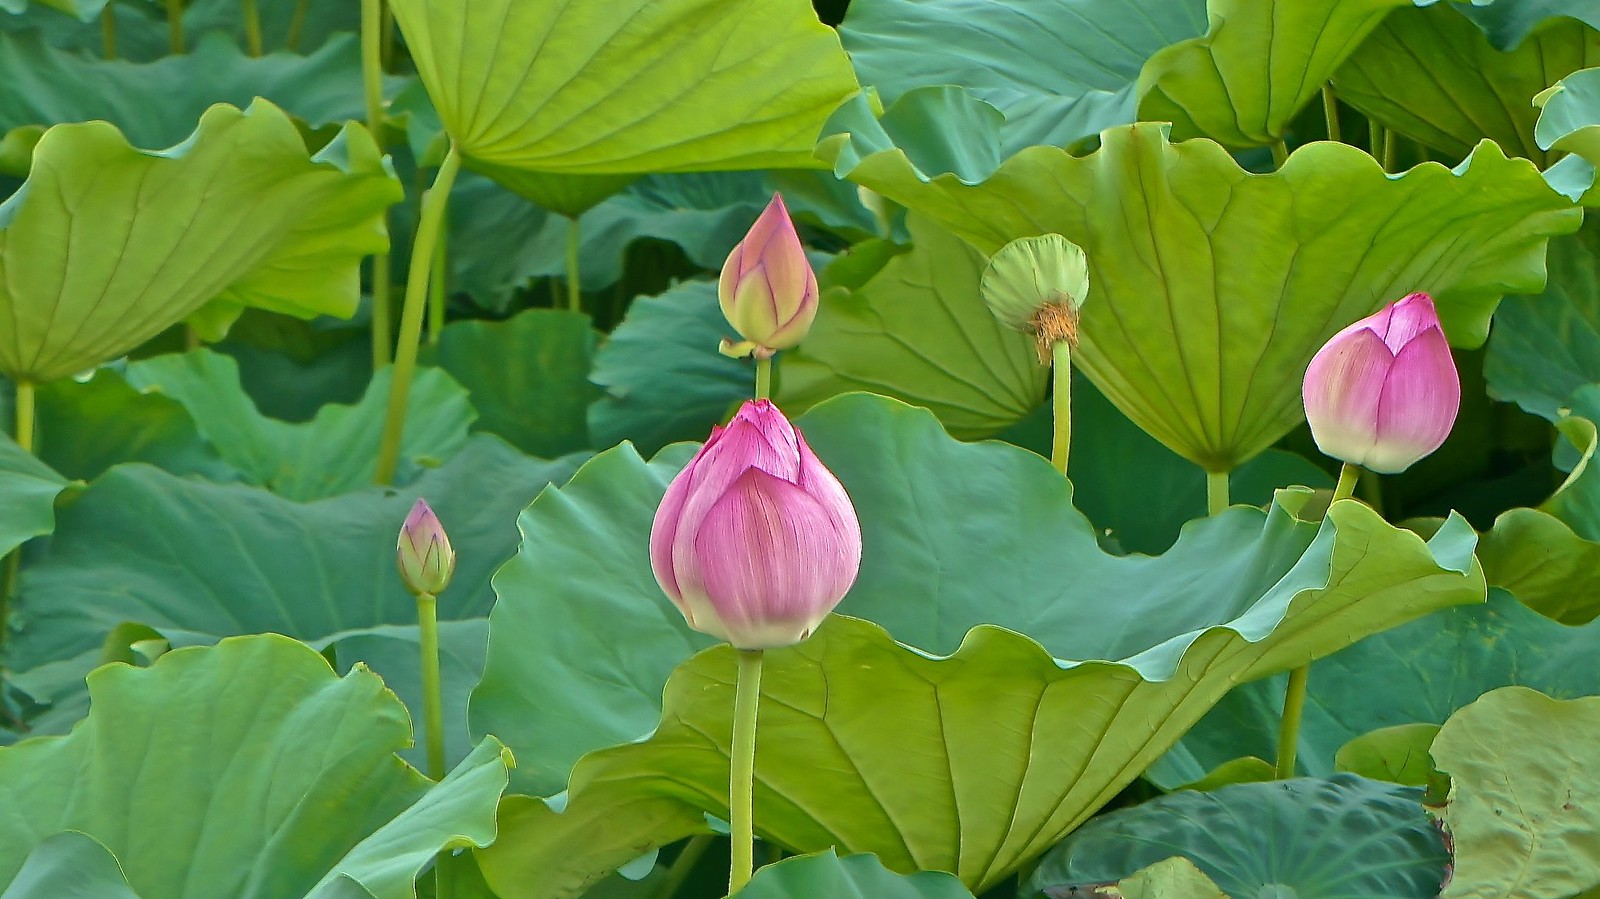 Lotus Flowers at Shinobazu Pond